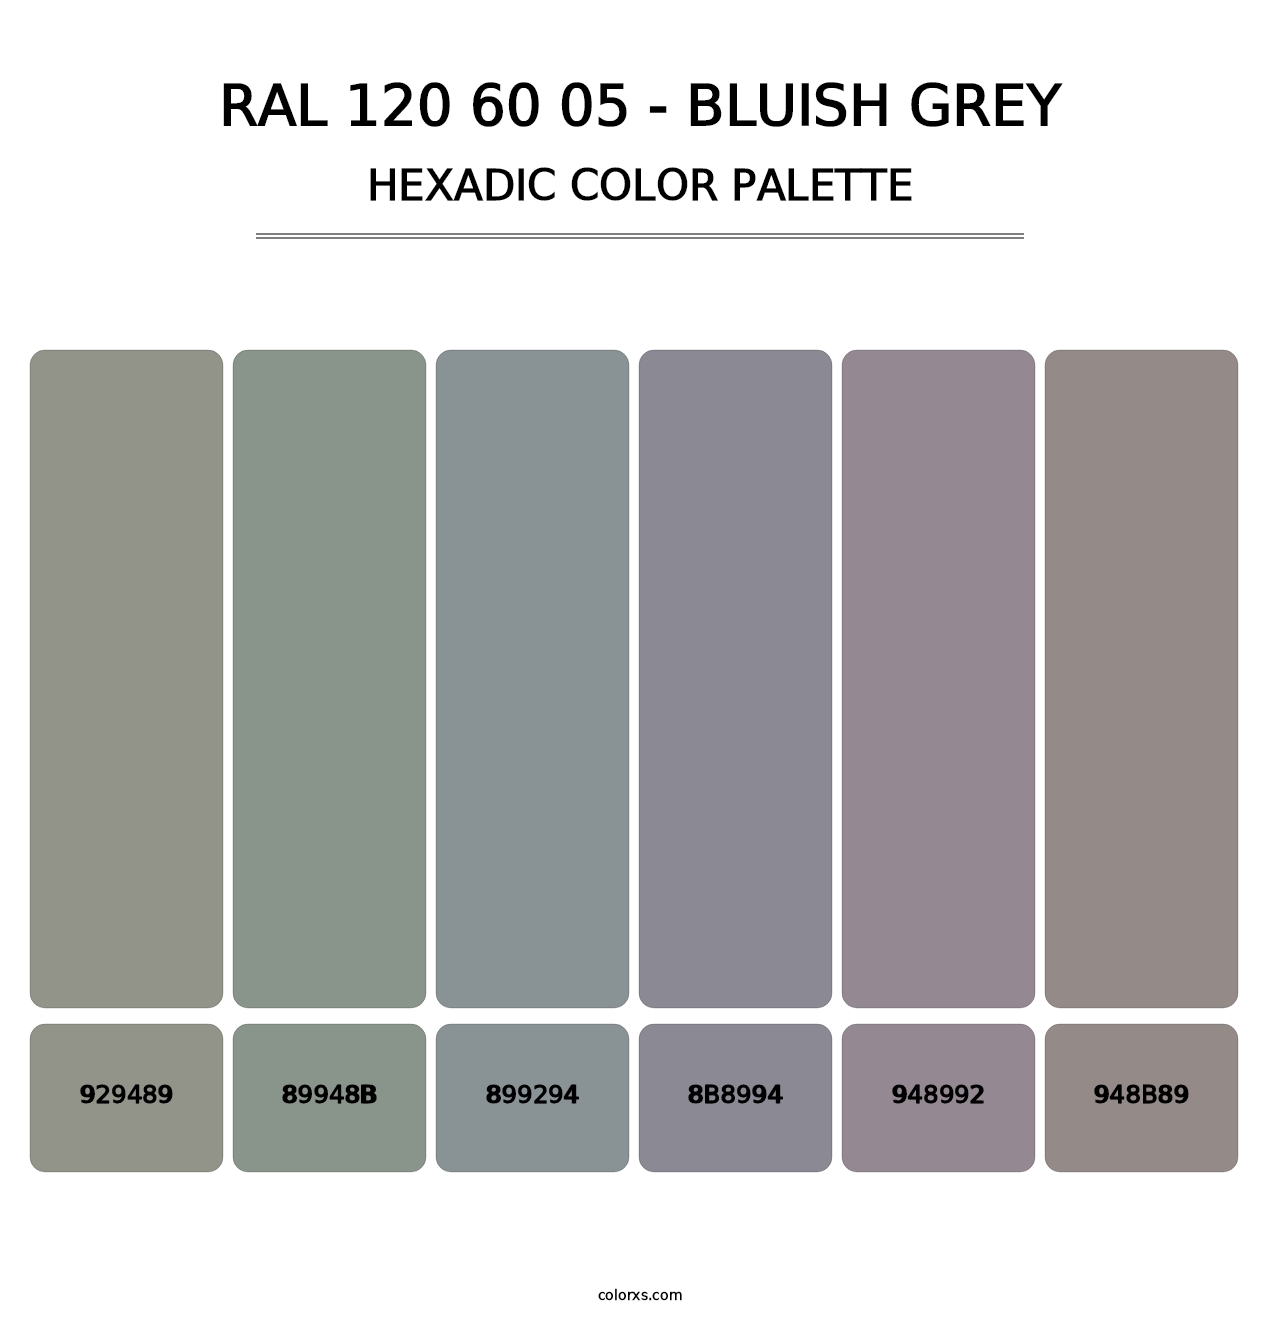 RAL 120 60 05 - Bluish Grey - Hexadic Color Palette